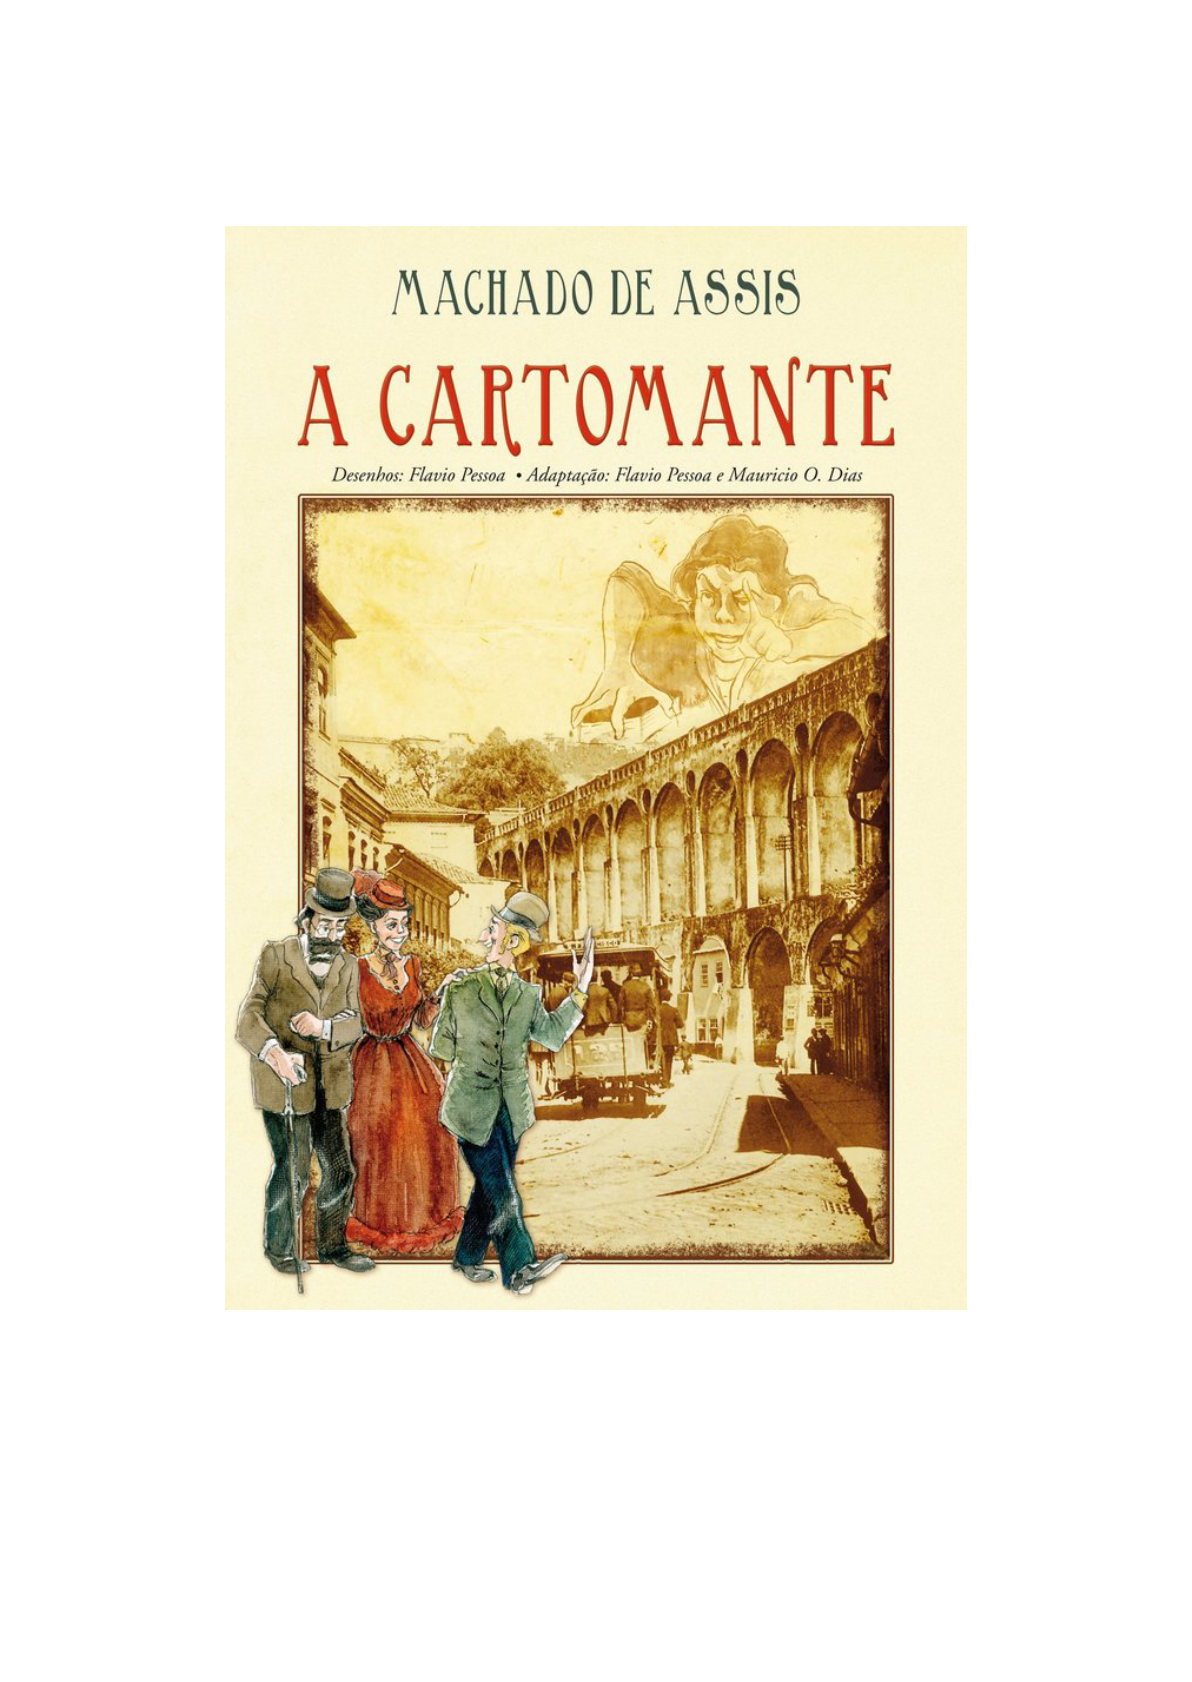 Graphic Novel: A Cartomante